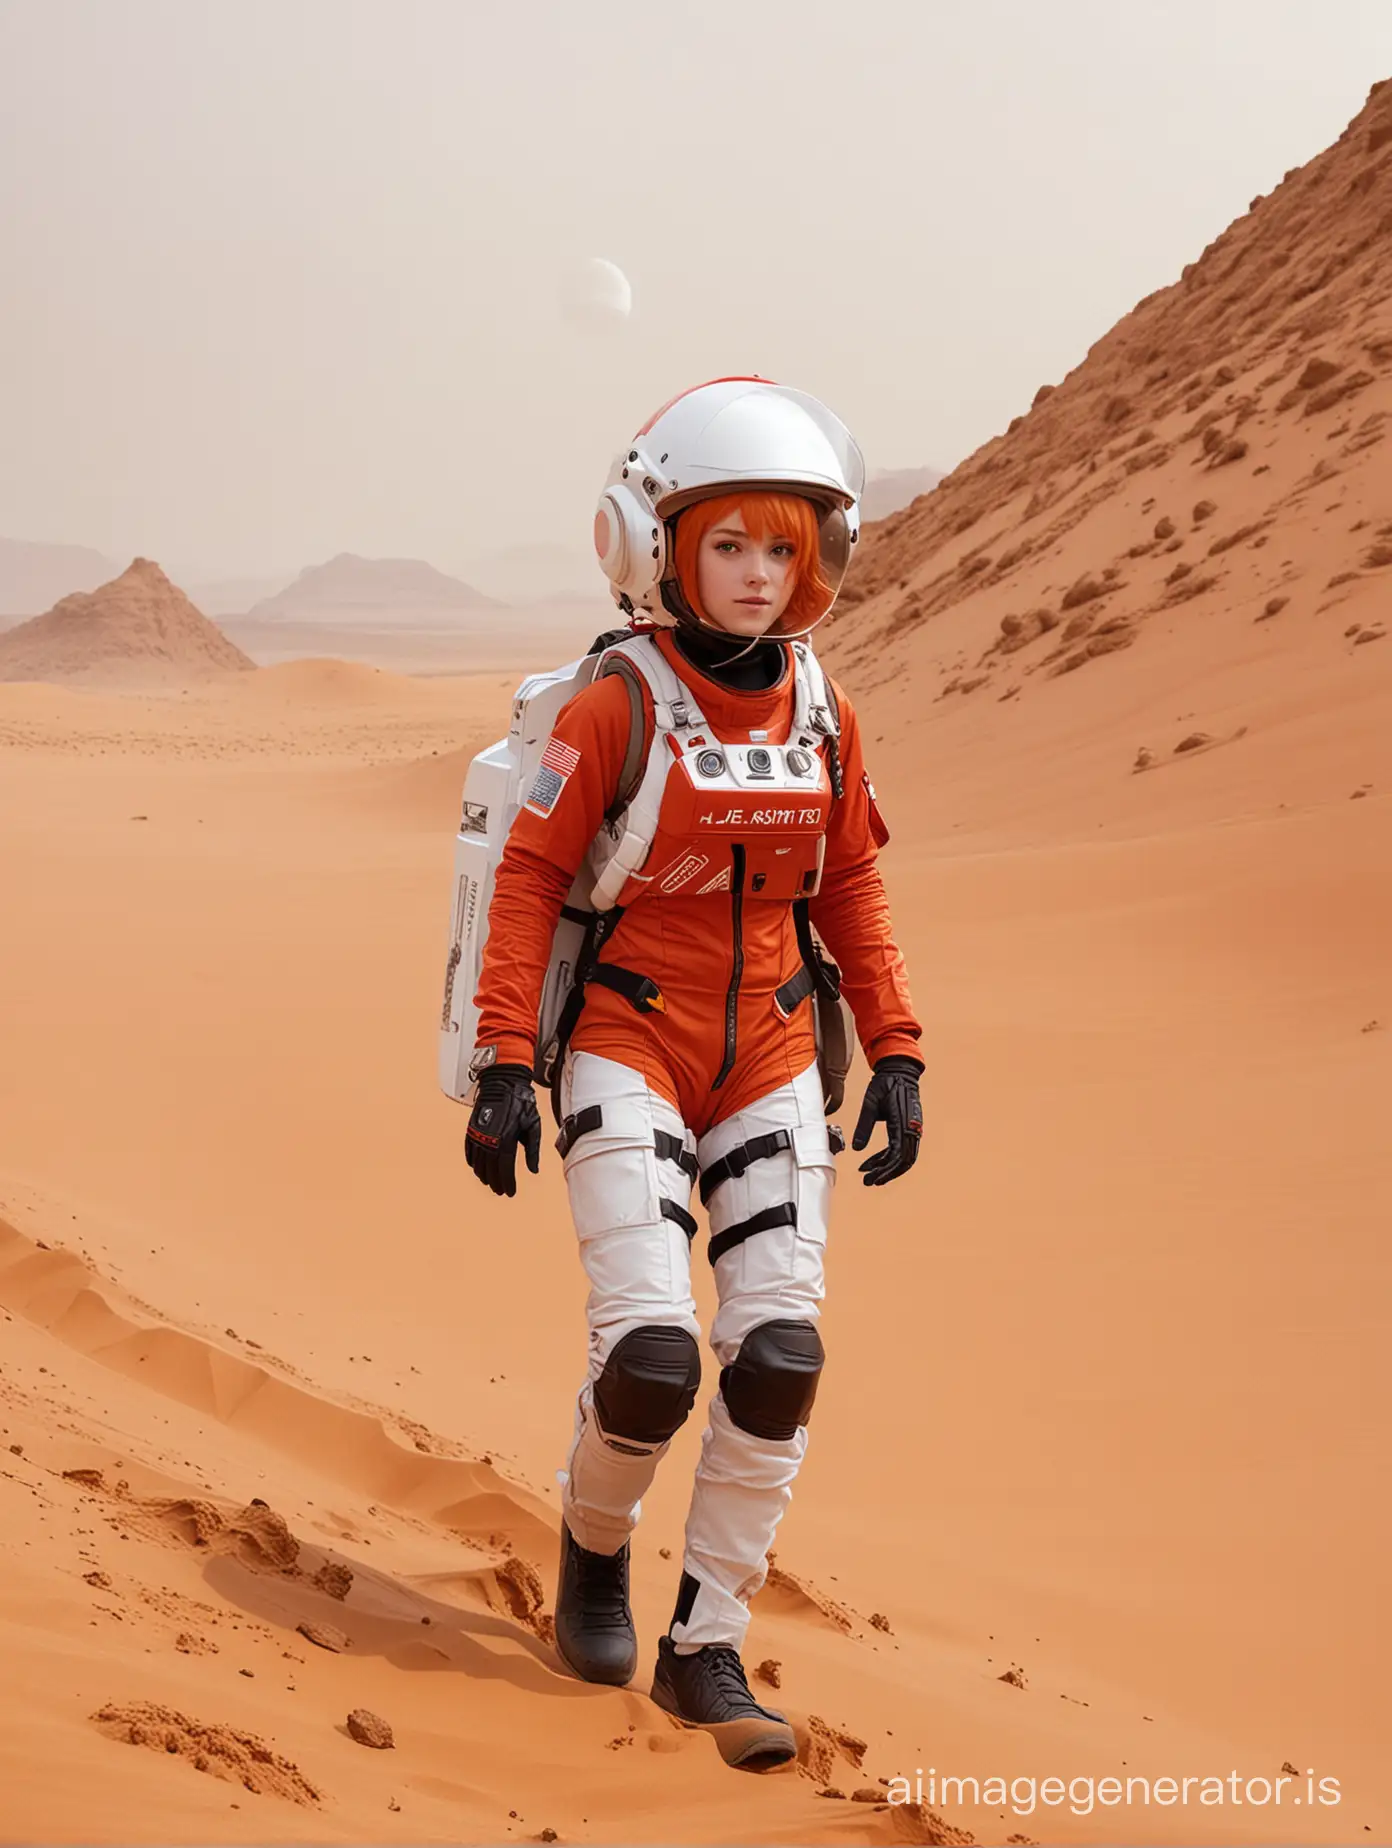 Anime-Girl-Riding-Curiosity-Rover-on-Martian-Sand-Dune-Amid-Sandstorm